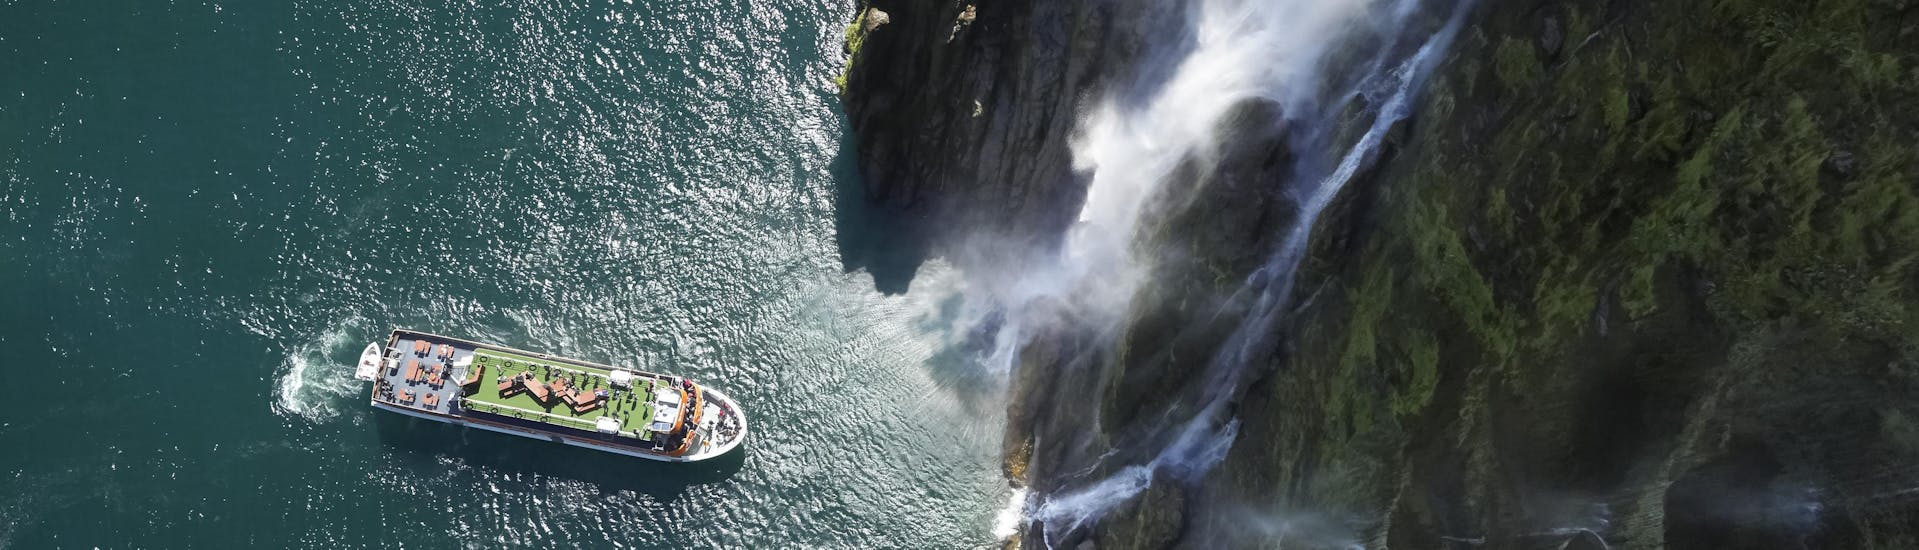 Boottocht naar Milford Sound Fjord met wild spotten & toeristische attracties.